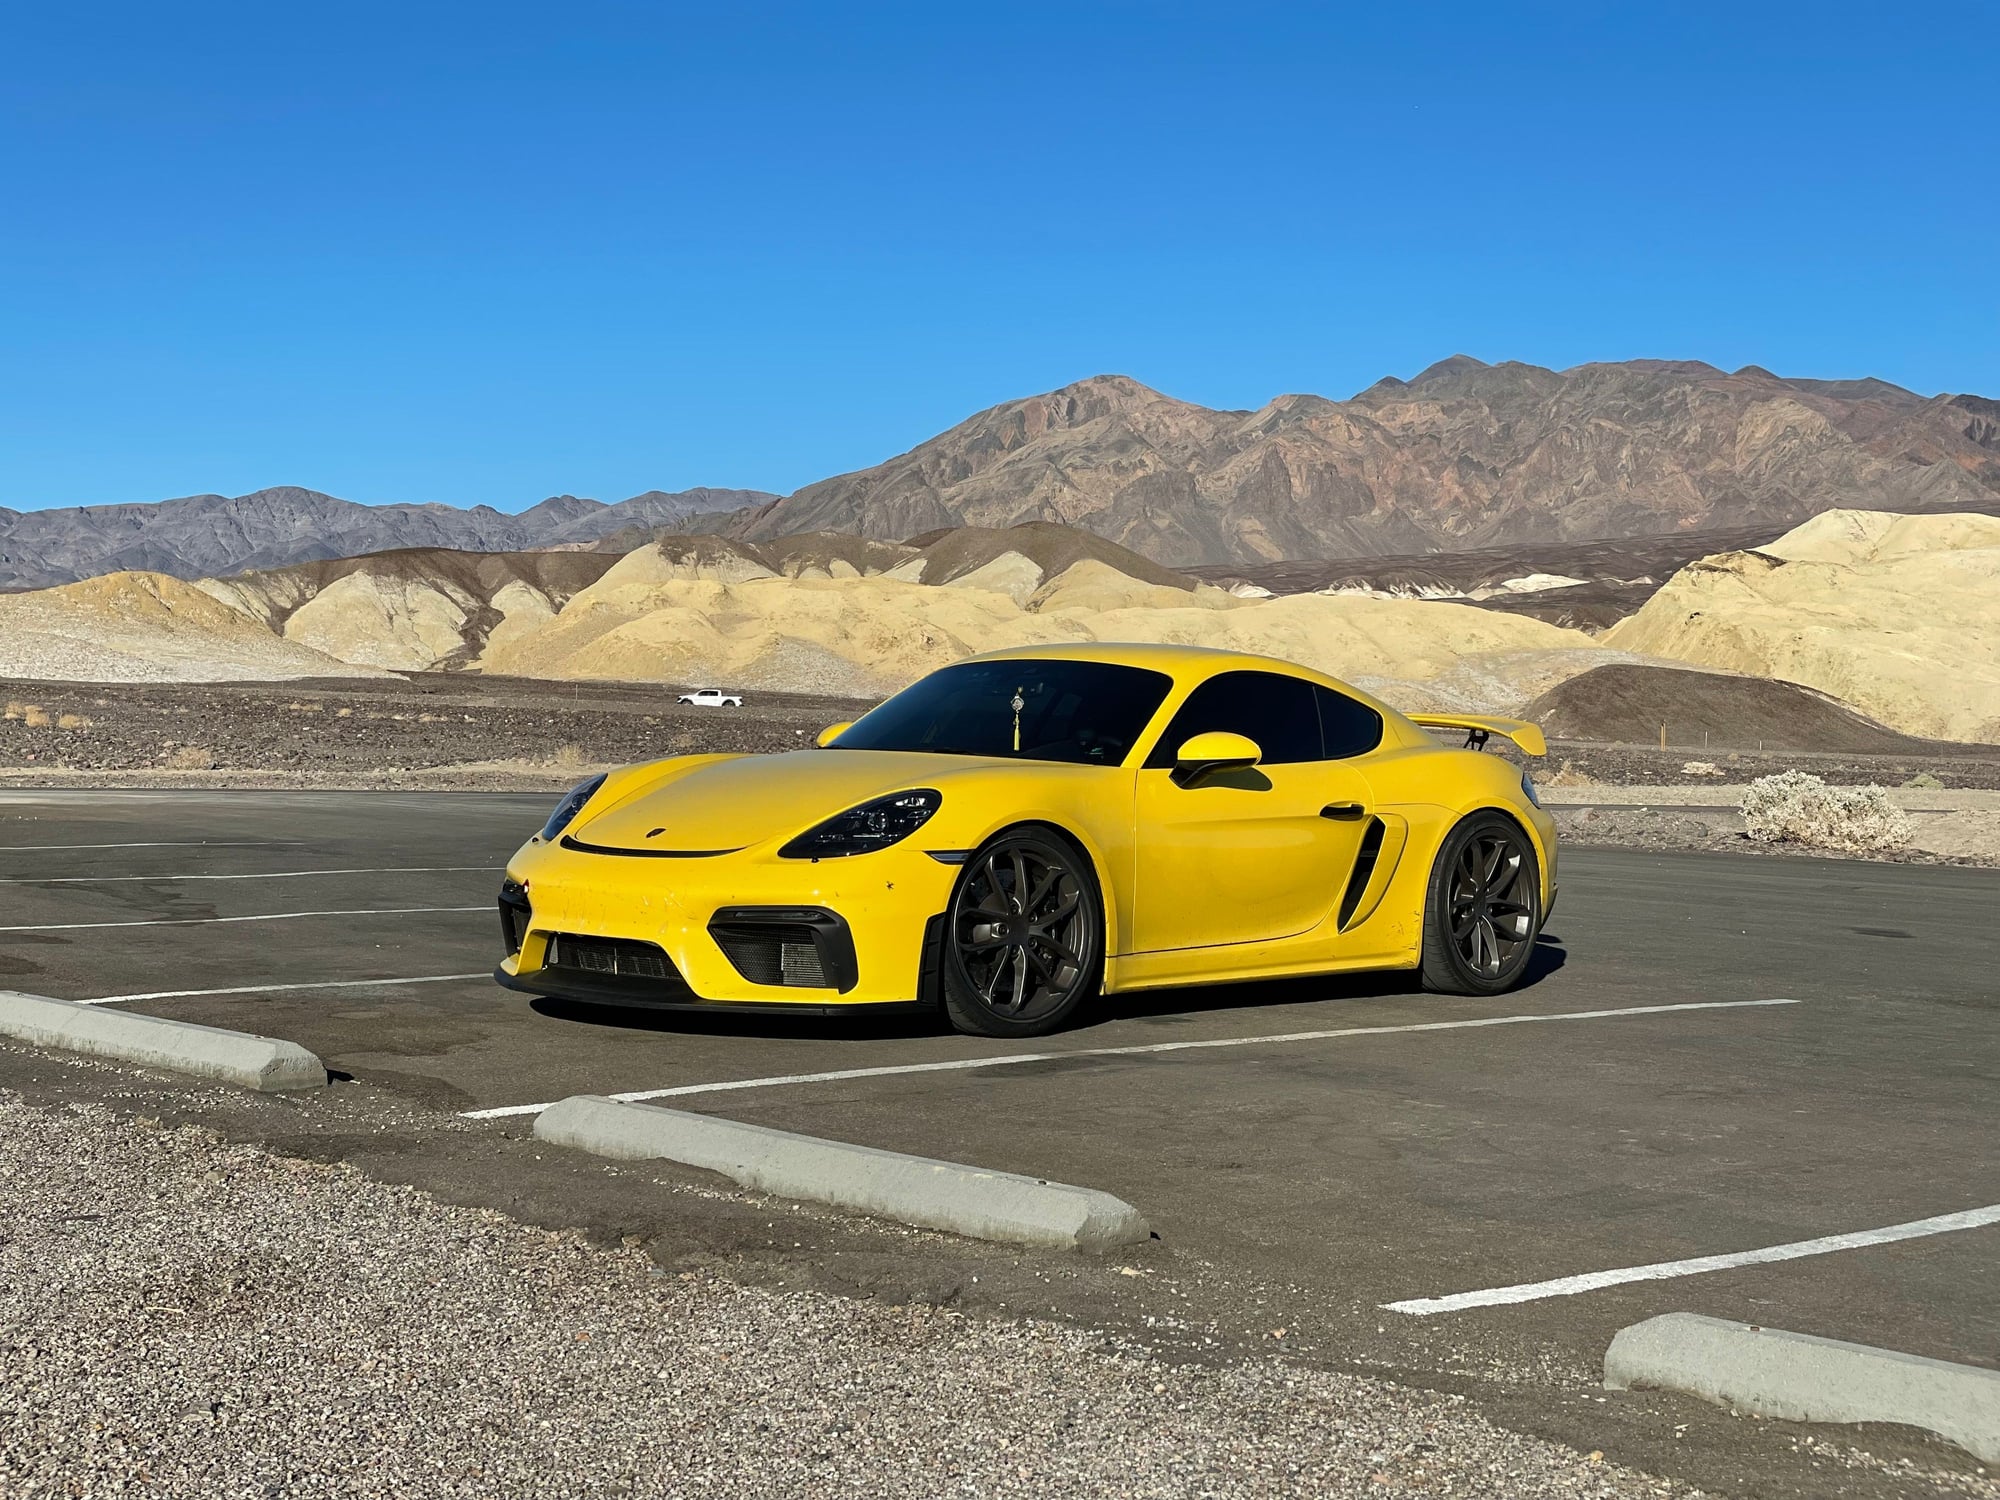 2021 Porsche 718 - 2021 GT4 PDK LWBS - CPO til Jan 1 2027 - Used - VIN Xxxxxxxxxxxxxxxx - 12,500 Miles - Automatic - Thousand Oaks, CA 91361, United States